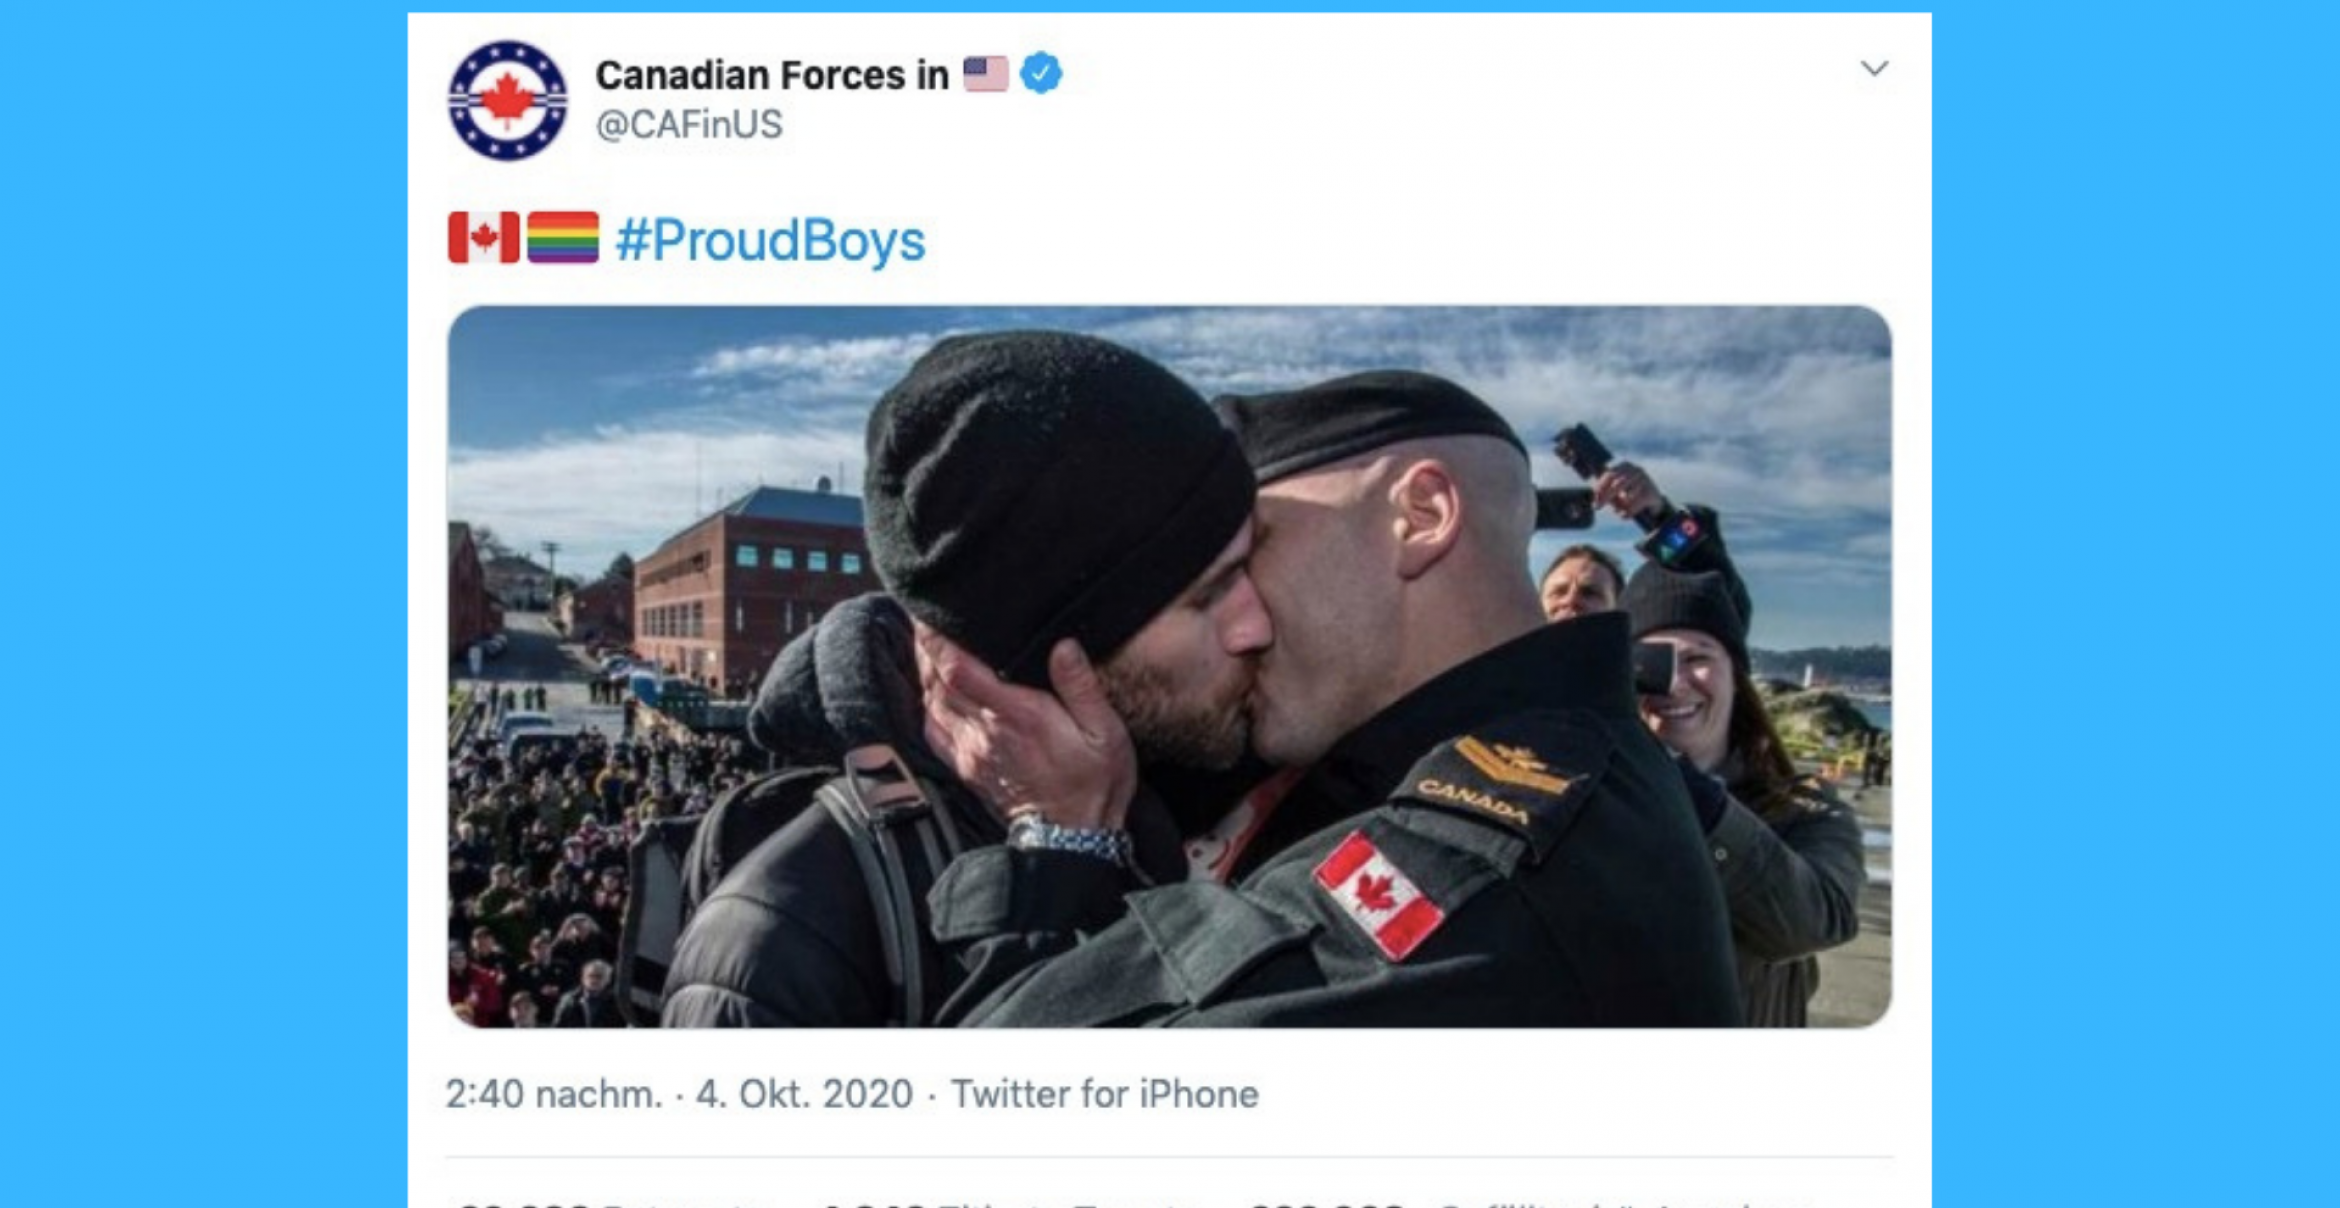 #ProudBoys: Schwule Twitter-User kapern rechtsextremen Hashtag und nutzen ihn für LGBTQ-Empowerment